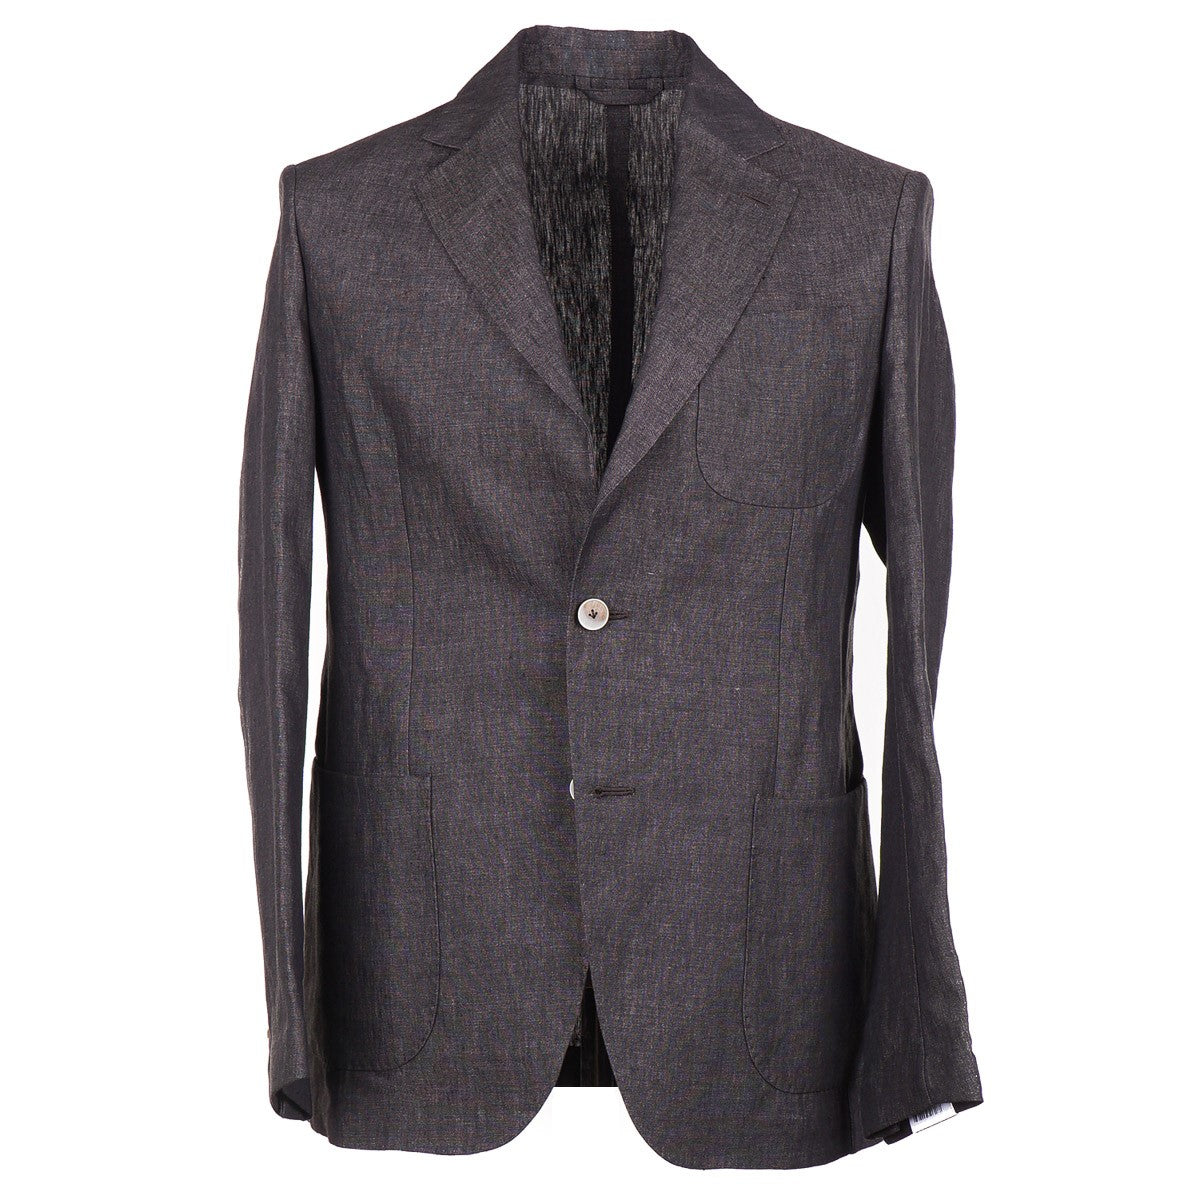 Luigi Borrelli Unlined Linen Suit - Top Shelf Apparel